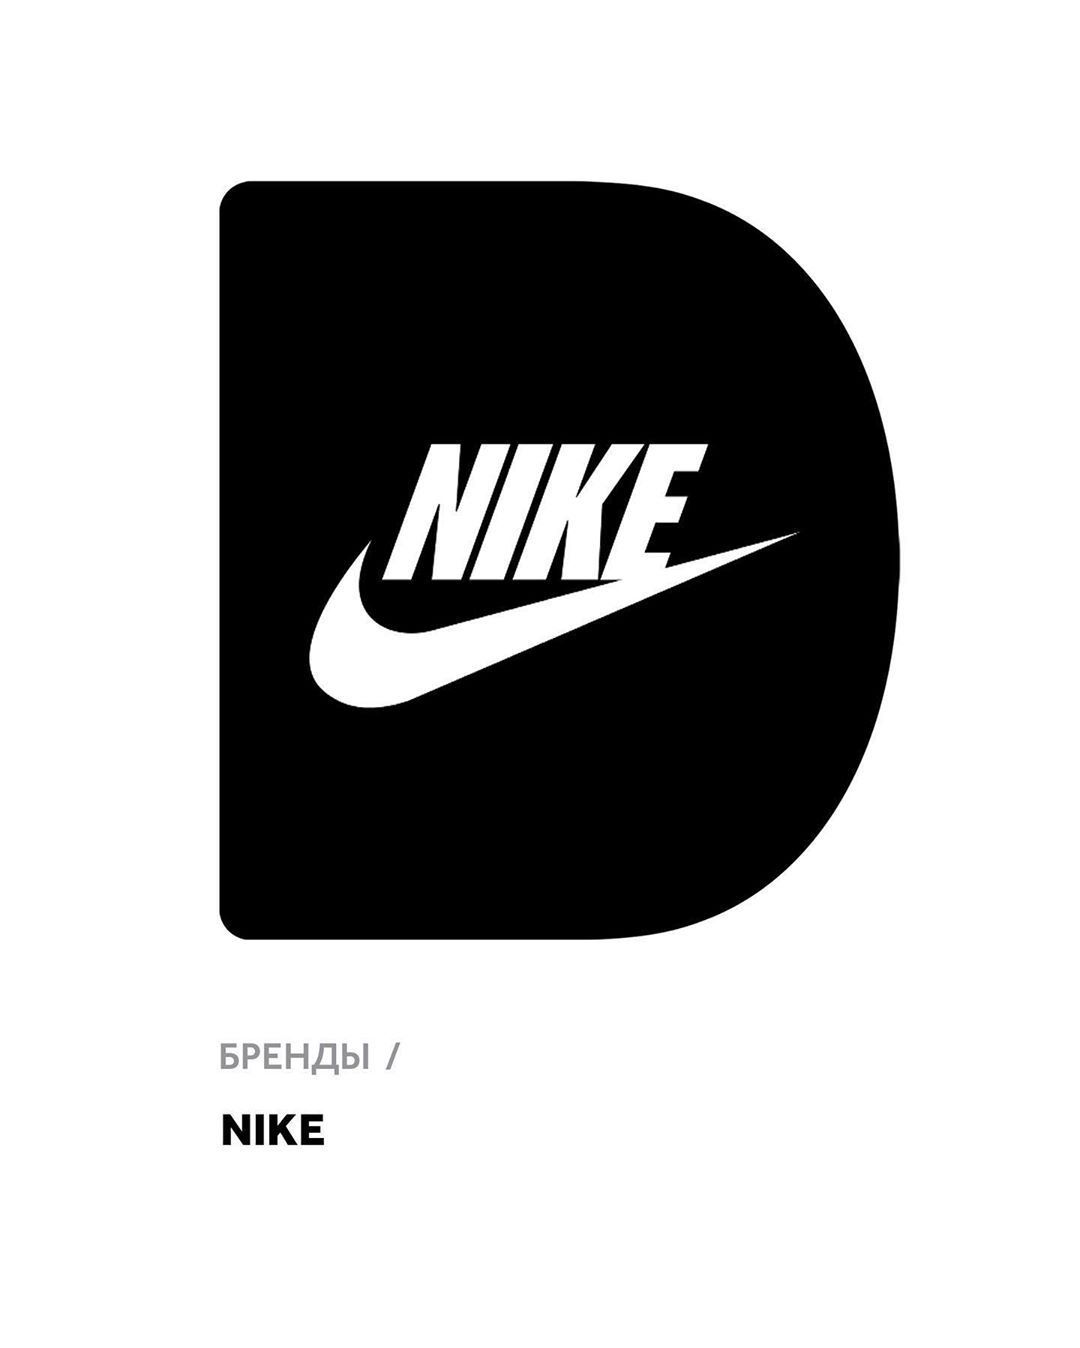 𝐅𝐔𝐍𝐊𝐘 𝐃𝐔𝐍𝐊𝐘 - Товары Nike в наличии в Funky Dunky.
⠀
В 1963 году пара спортсменов-энтузиастов продала первые 300 пар кроссовок из Японии. Спустя полвека Nike — практически синоним спорта: в нём стави...